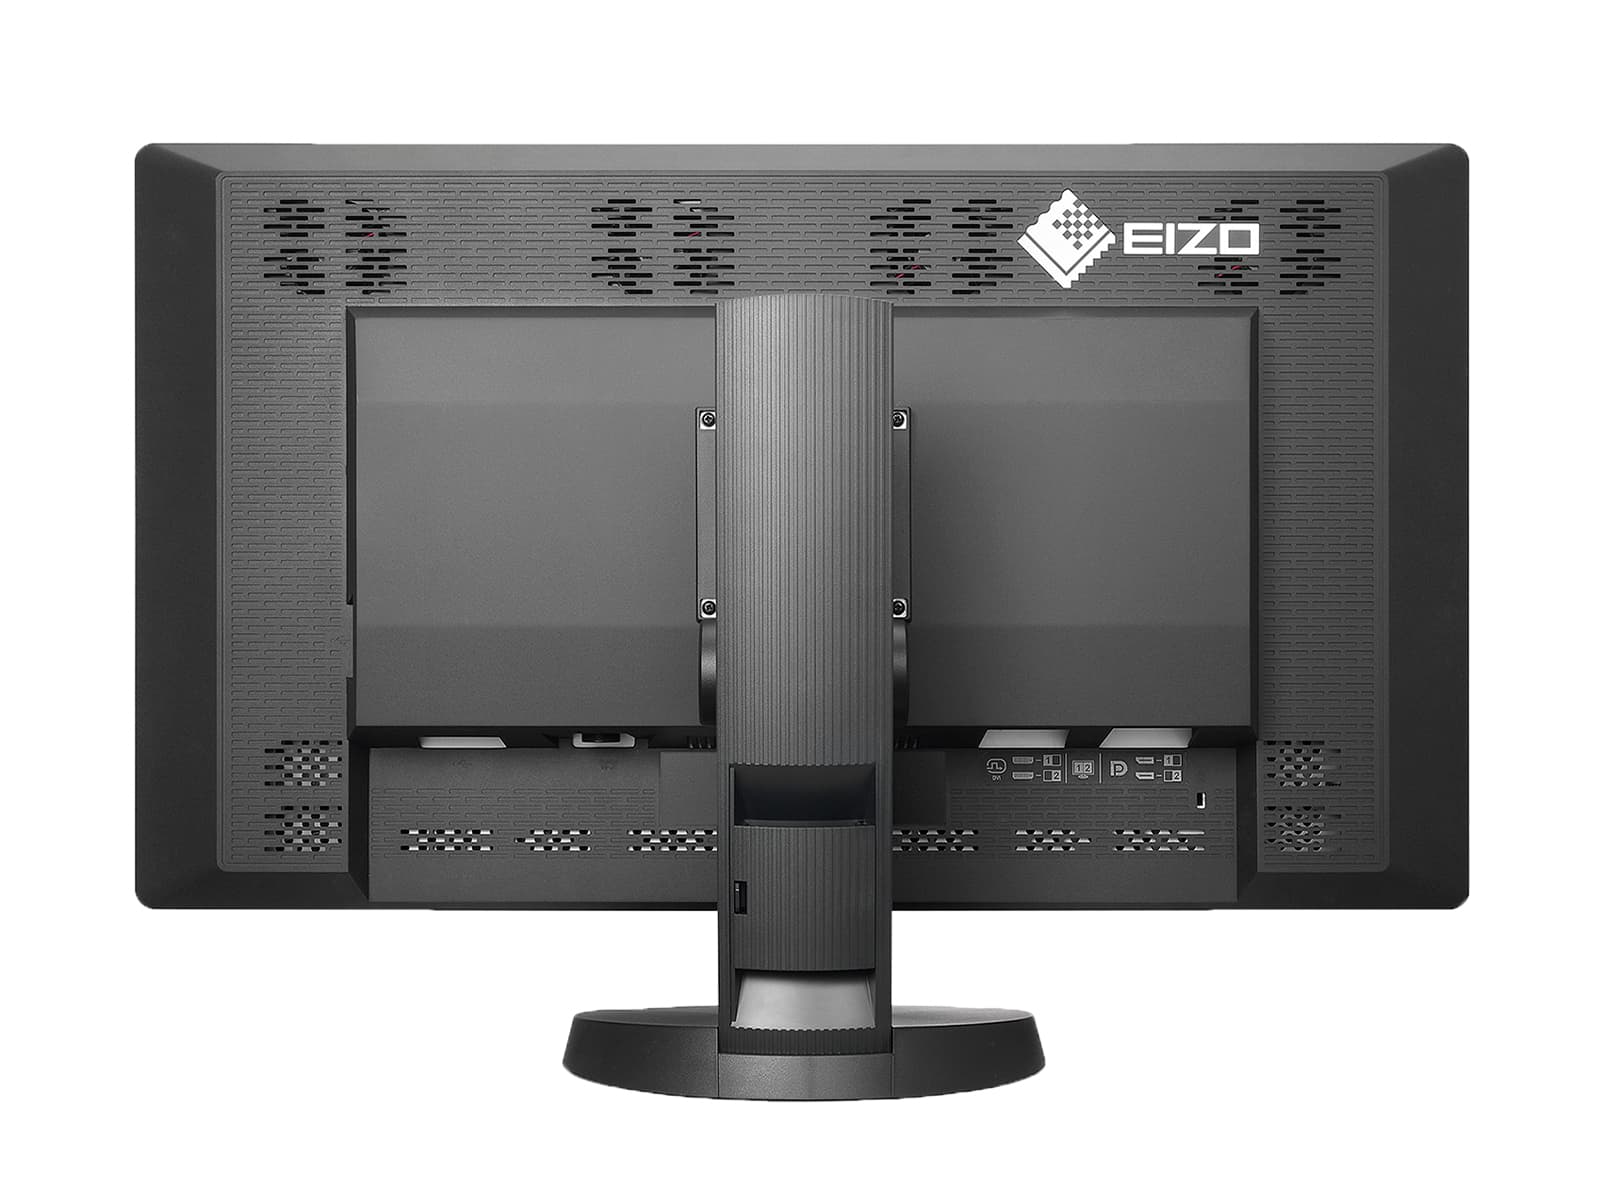 Écran d'imagerie mammaire Eizo RadiForce RX850 Fusion Color LED Mammo 3D-DBT (RX850-BK) Monitors.com